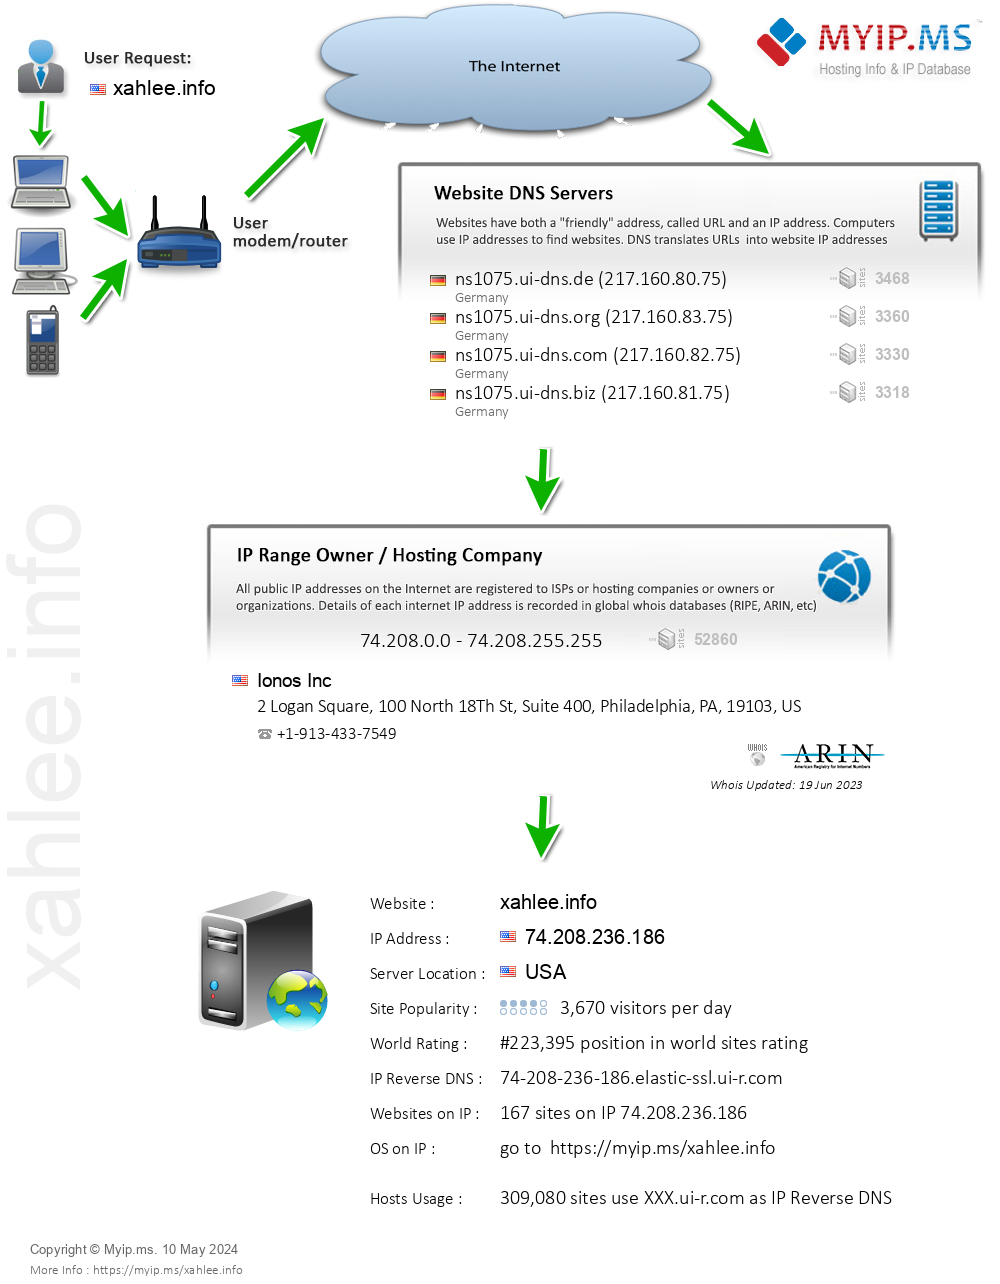 Xahlee.info - Website Hosting Visual IP Diagram